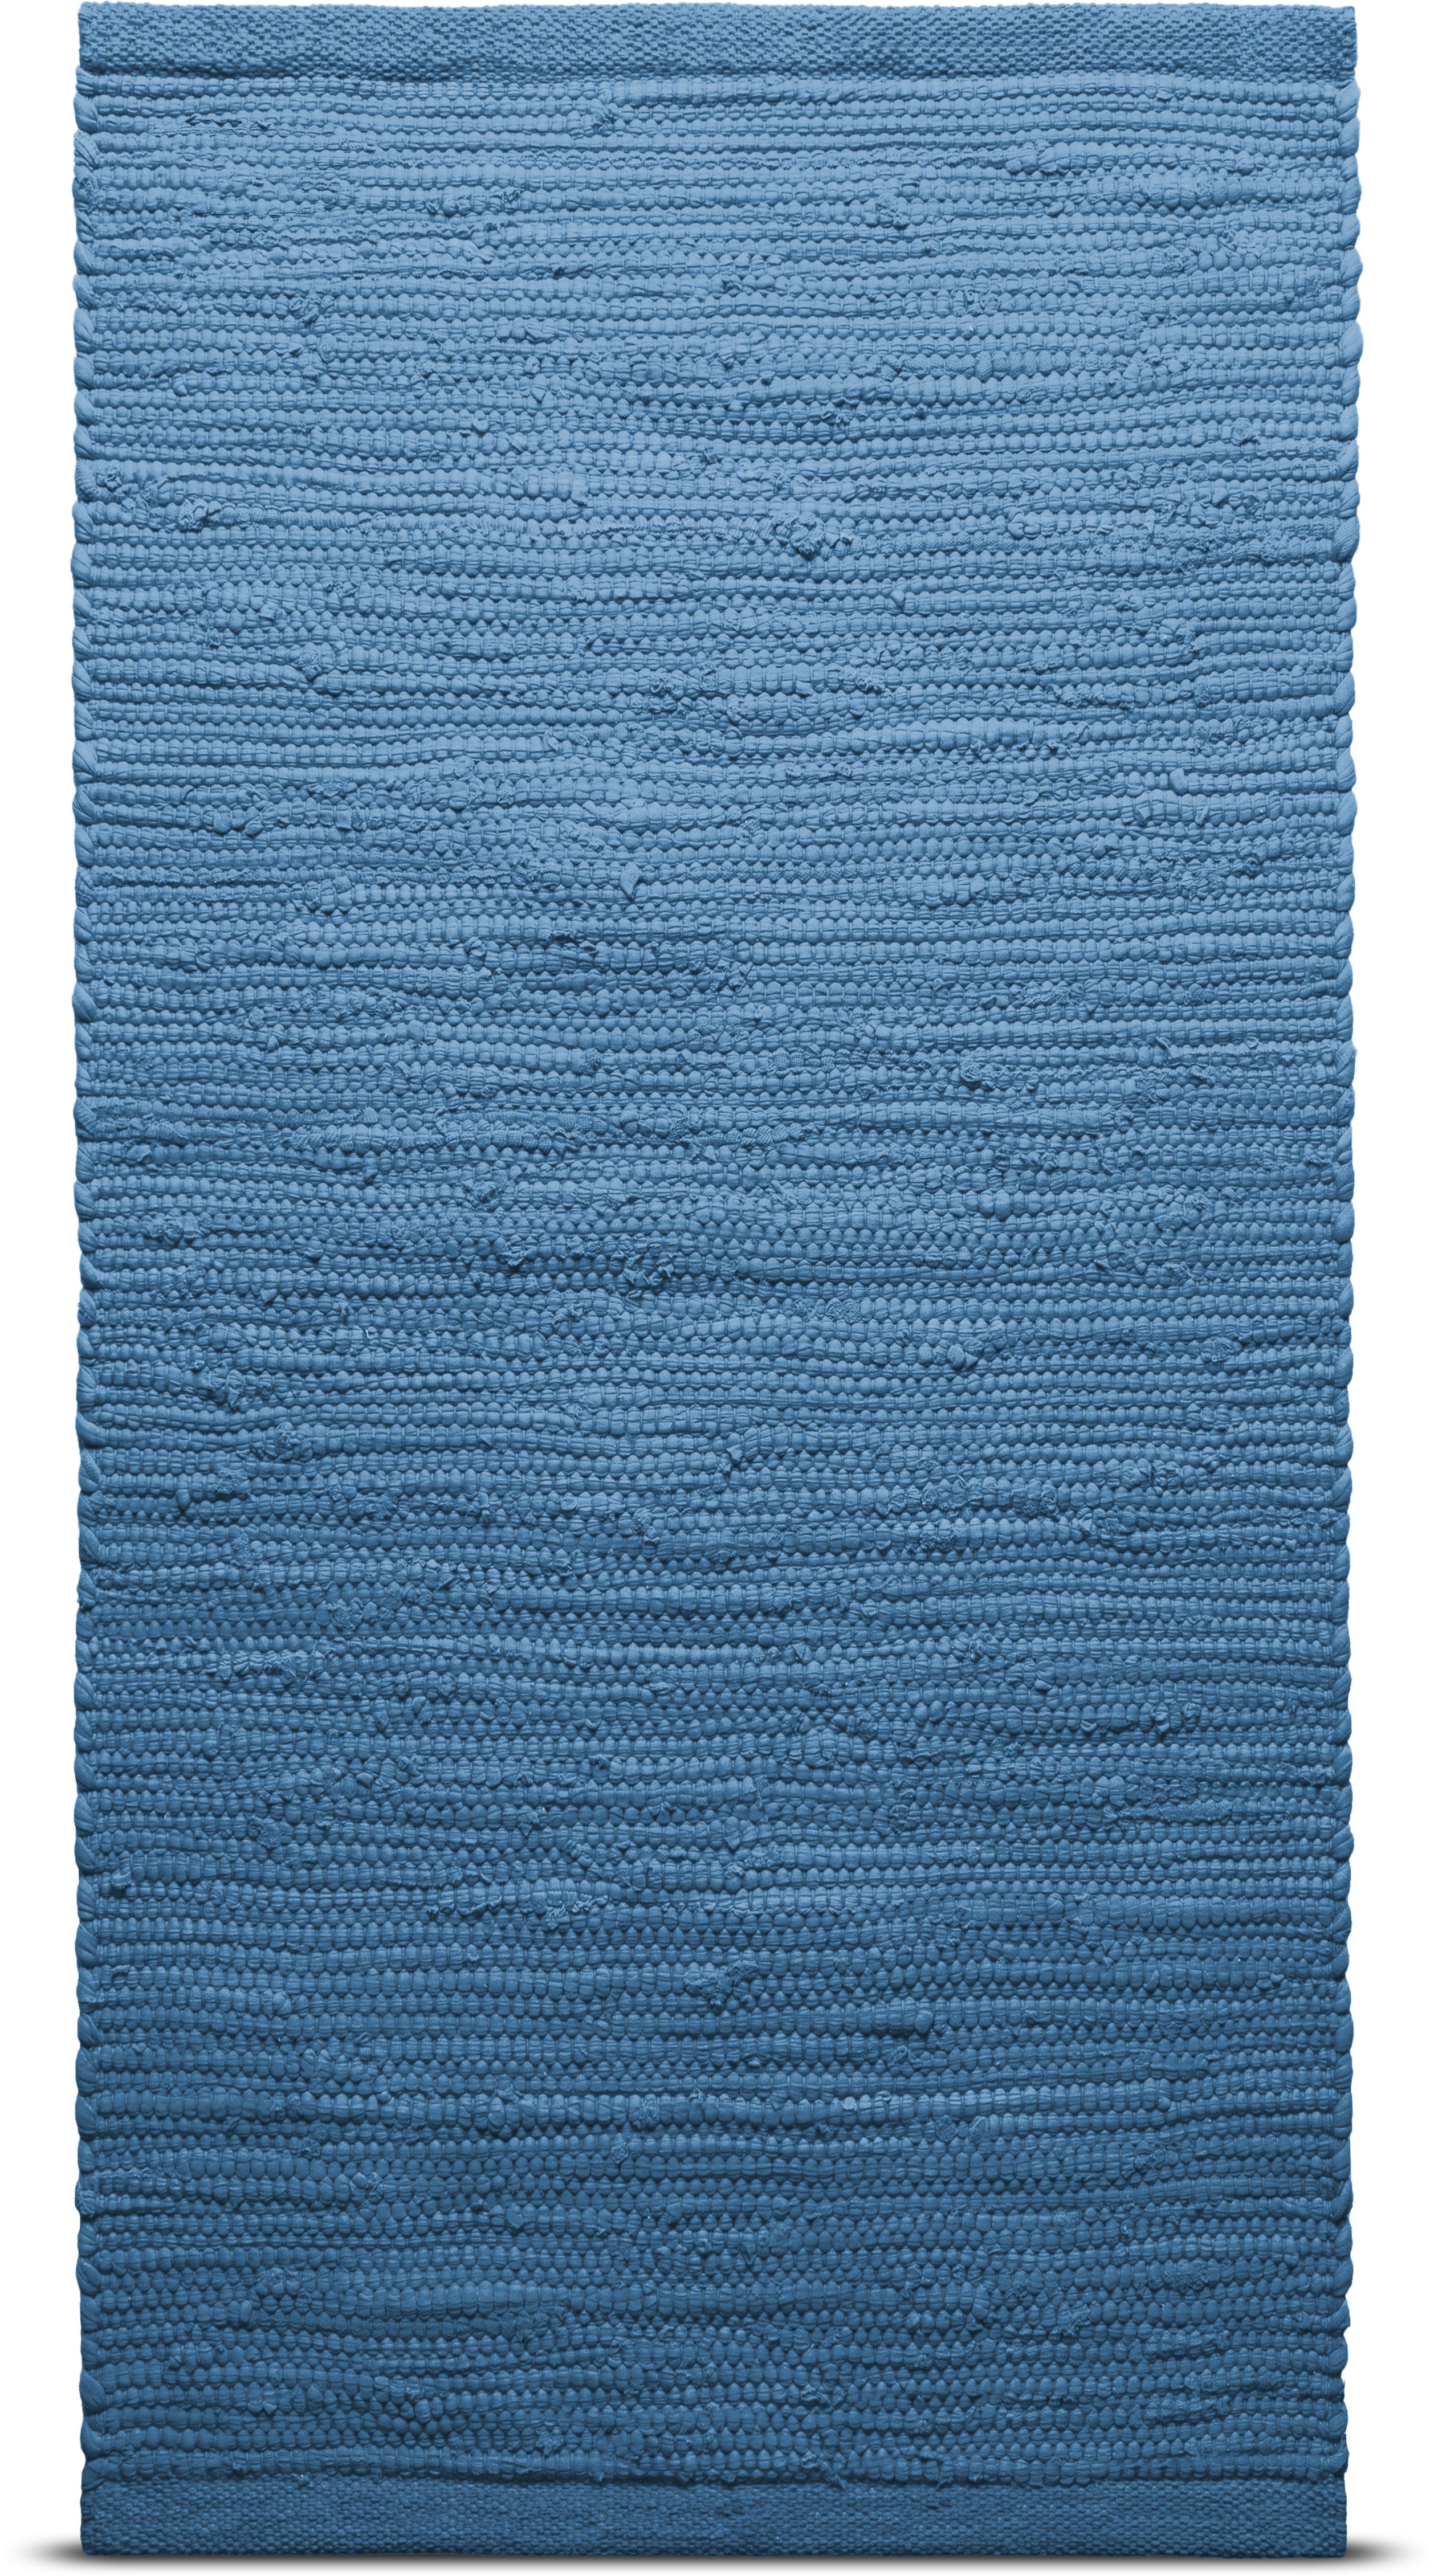 Tappeto in cotone solido 60 x 90 cm, Pacifico